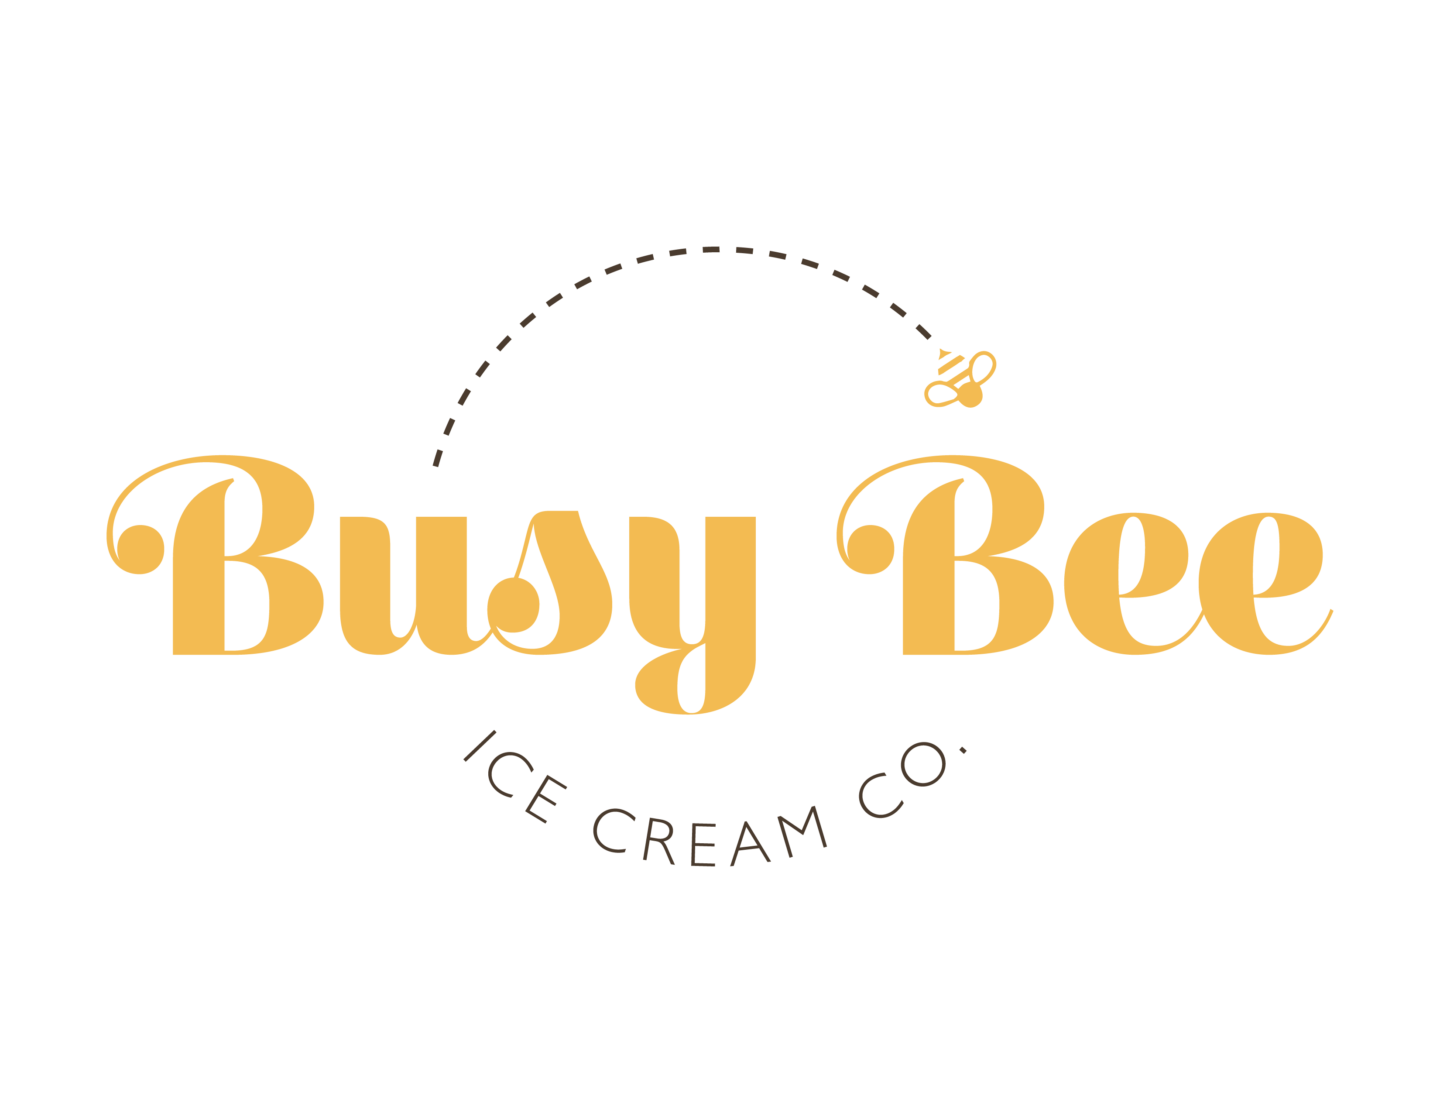 Busy Bee Ice Cream Co. Logo